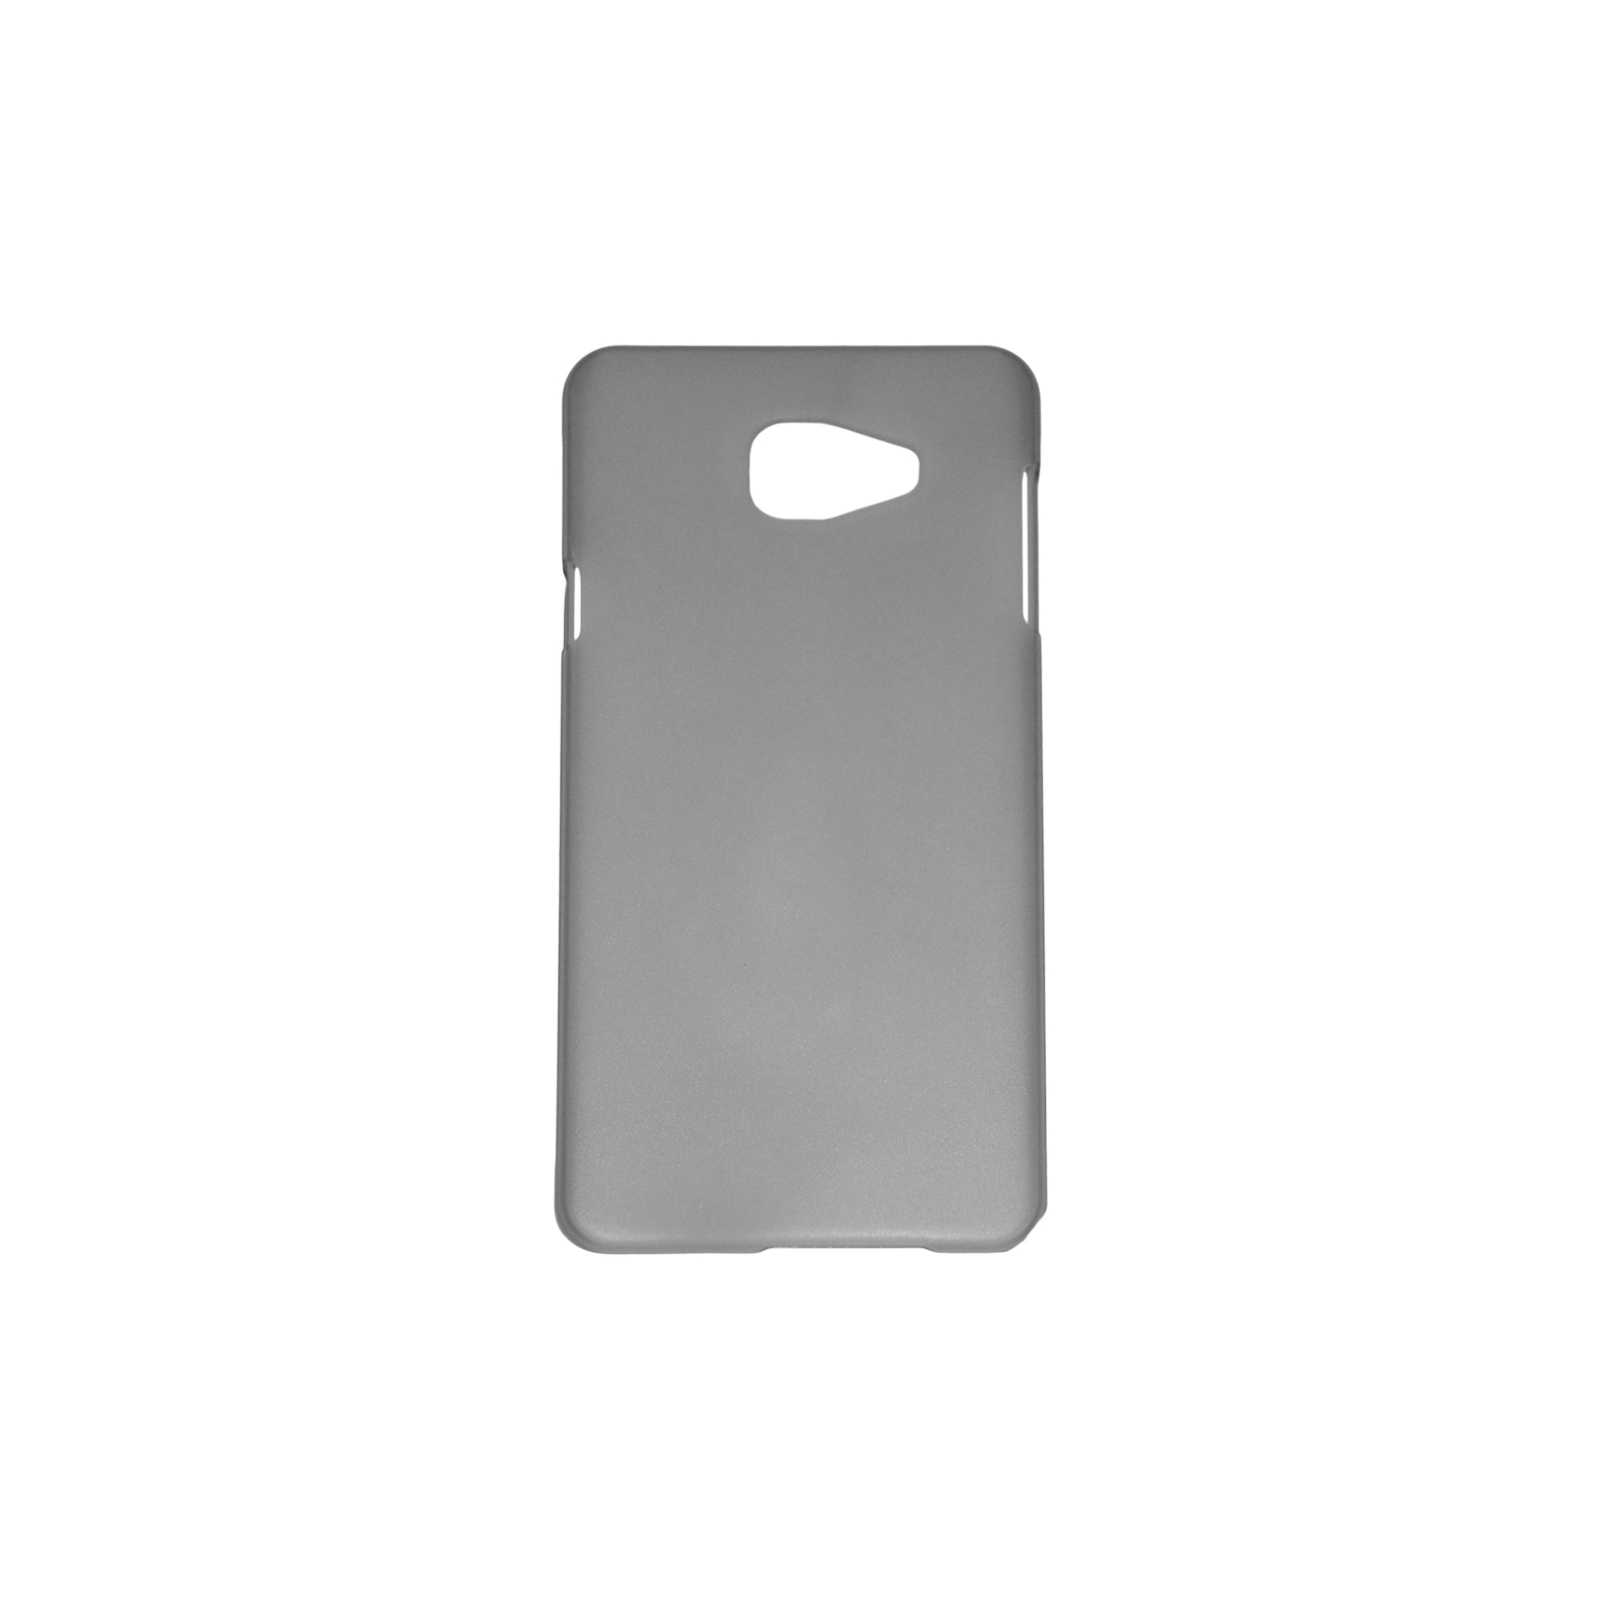 Чехол для мобильного телефона Pro-case для Samsung A7 (A710) black (PC-matte A7 (A710) black)